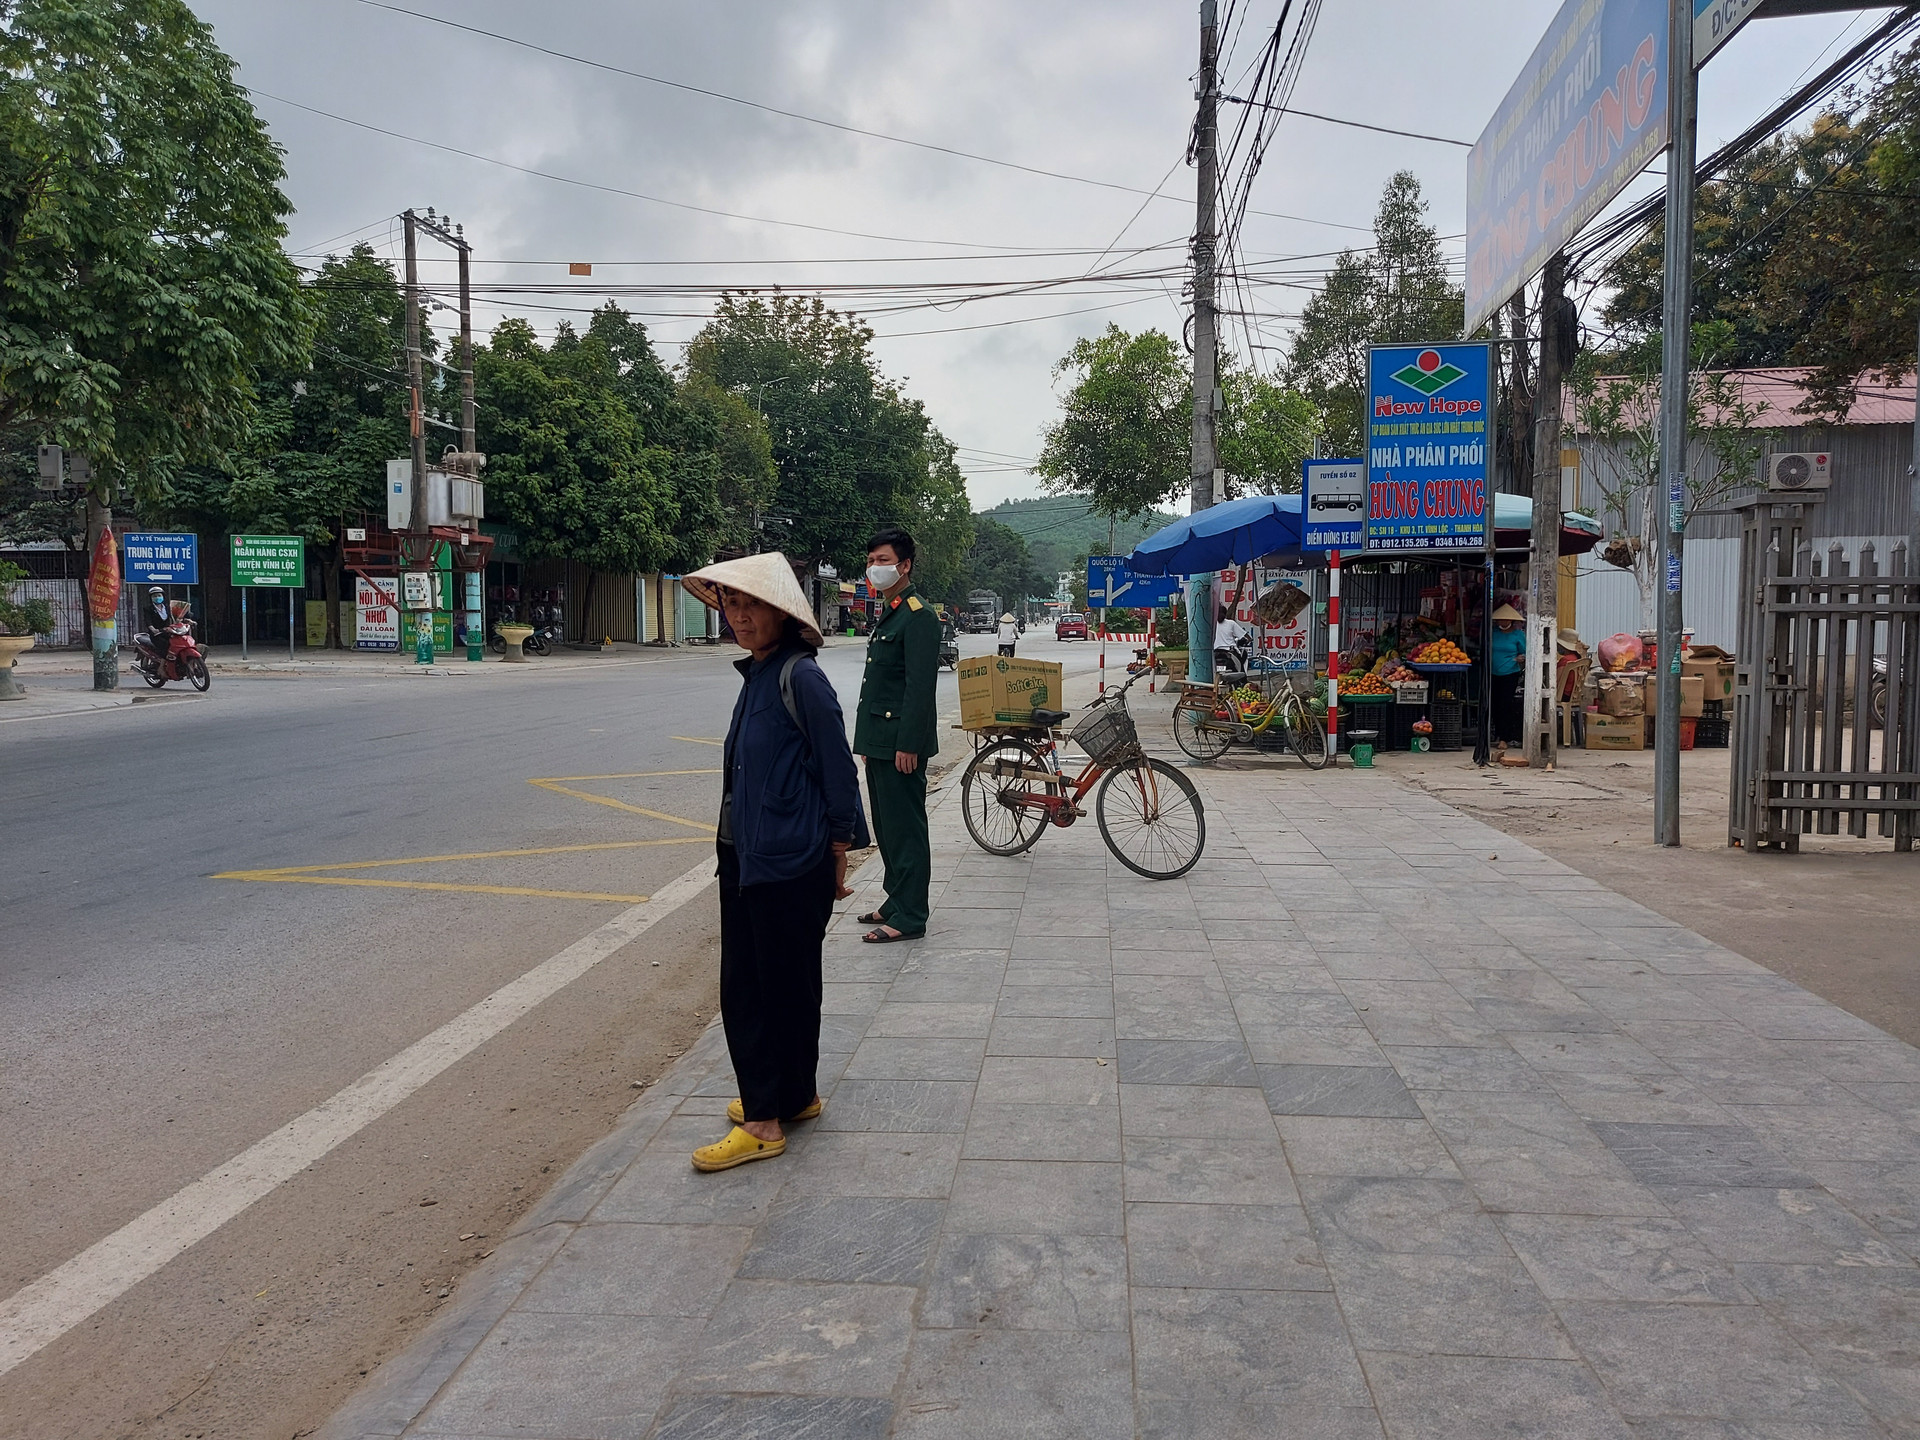  Người dân thị trấn Vĩnh Lộc (Thanh Hóa) hiện đã dễ dàng đứng chờ xe buýt tại điểm dừng đỗ được cắm biển, có vạch kẻ đường.